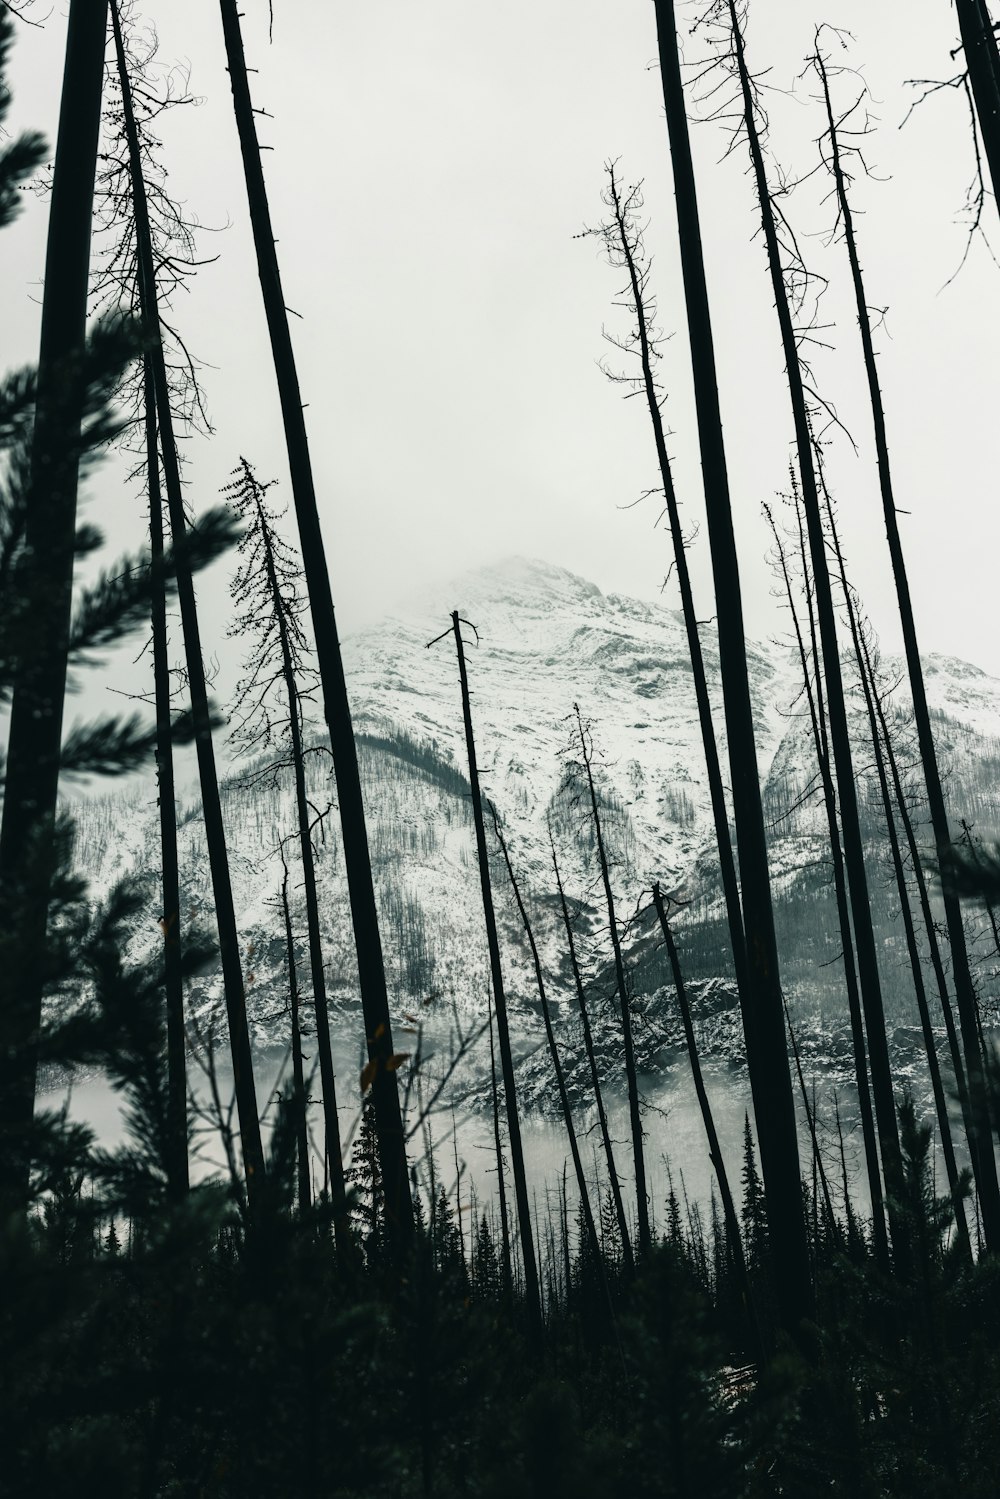 Blick auf einen verschneiten Berg durch einige Bäume hindurch